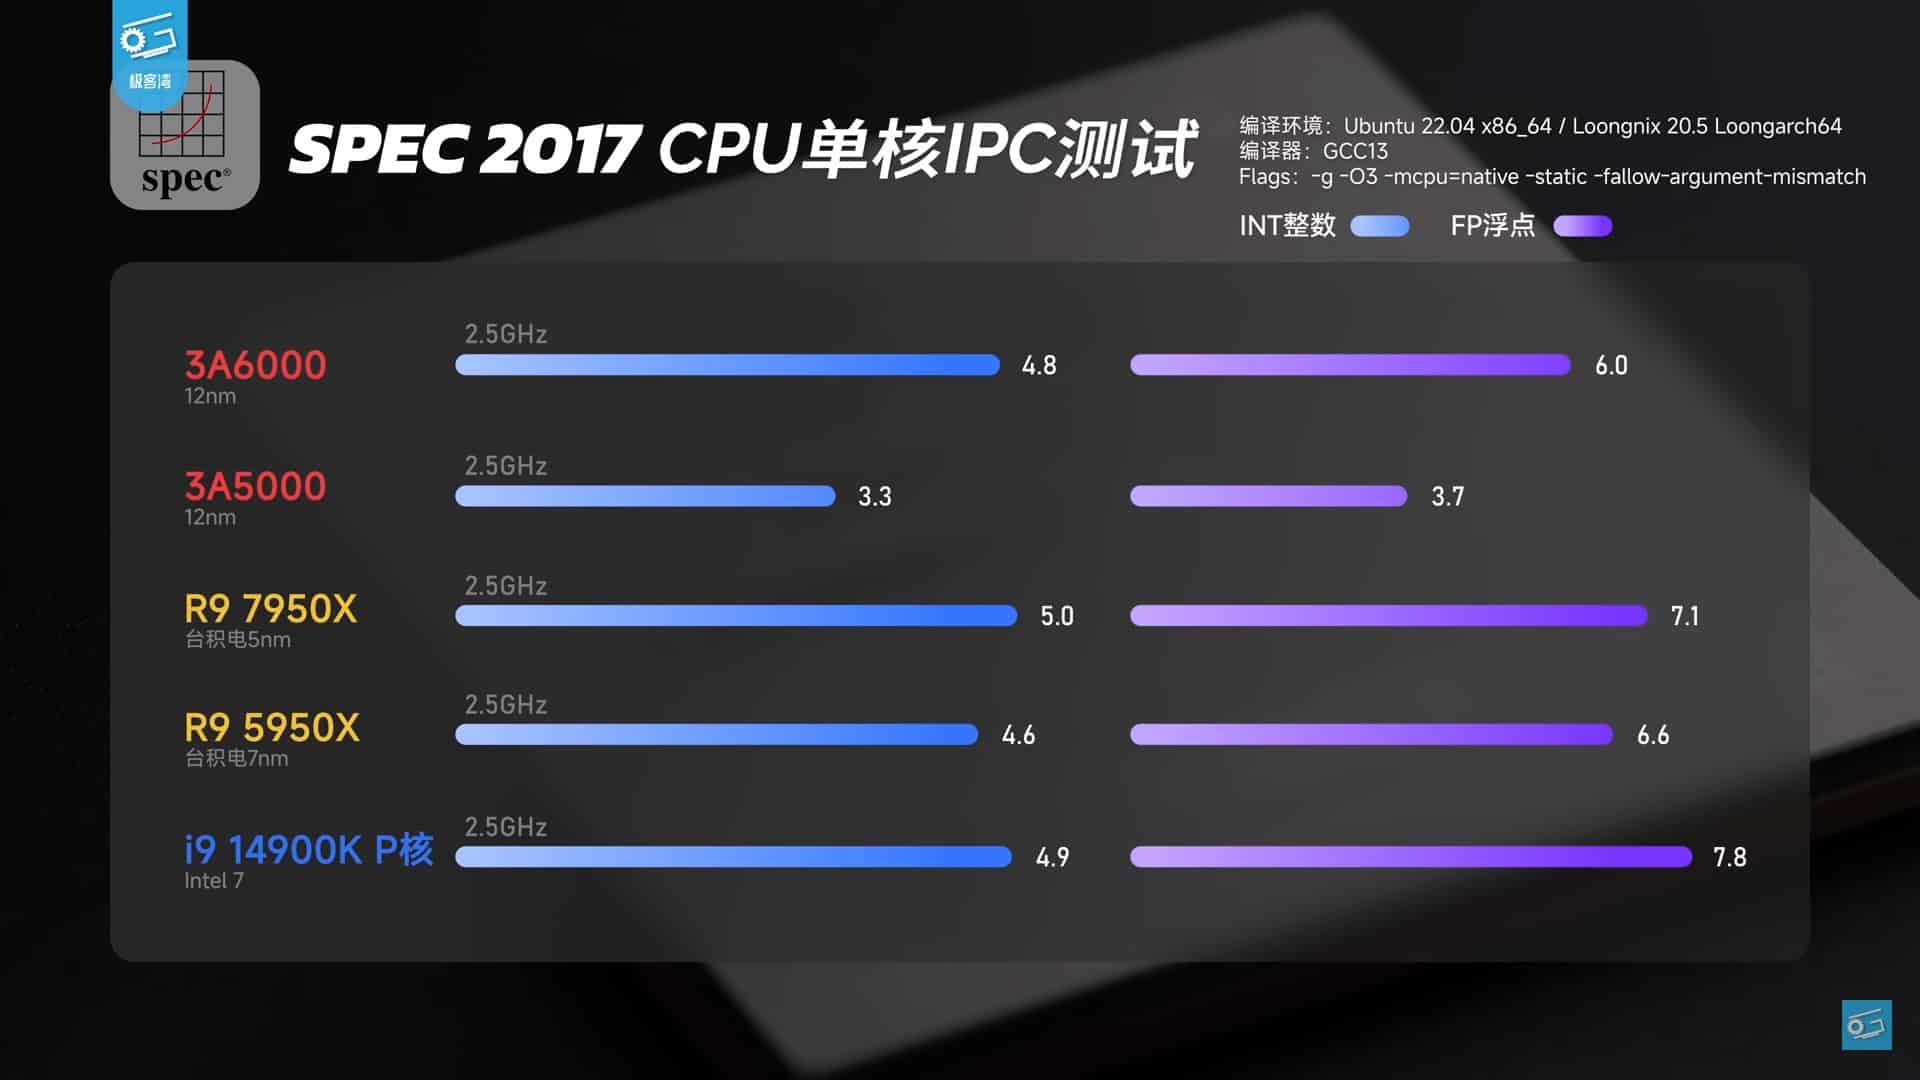 المعالج الصيني Loongson 3A6000 قد ينافس معالجات إنتل و AMD